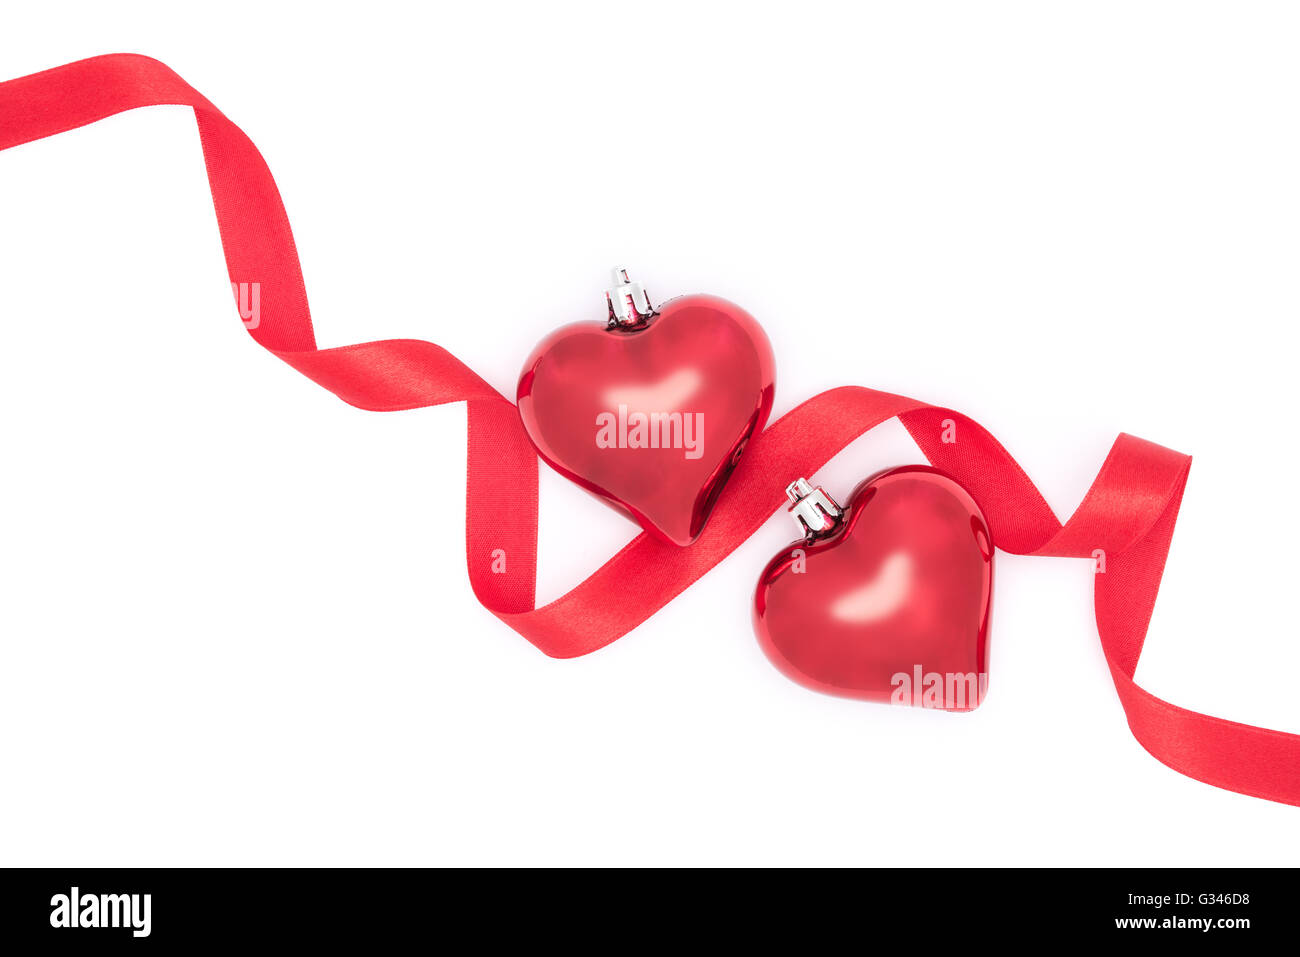 Fêter la Saint-Valentin, coeurs et ruban rouge sur fond blanc Banque D'Images